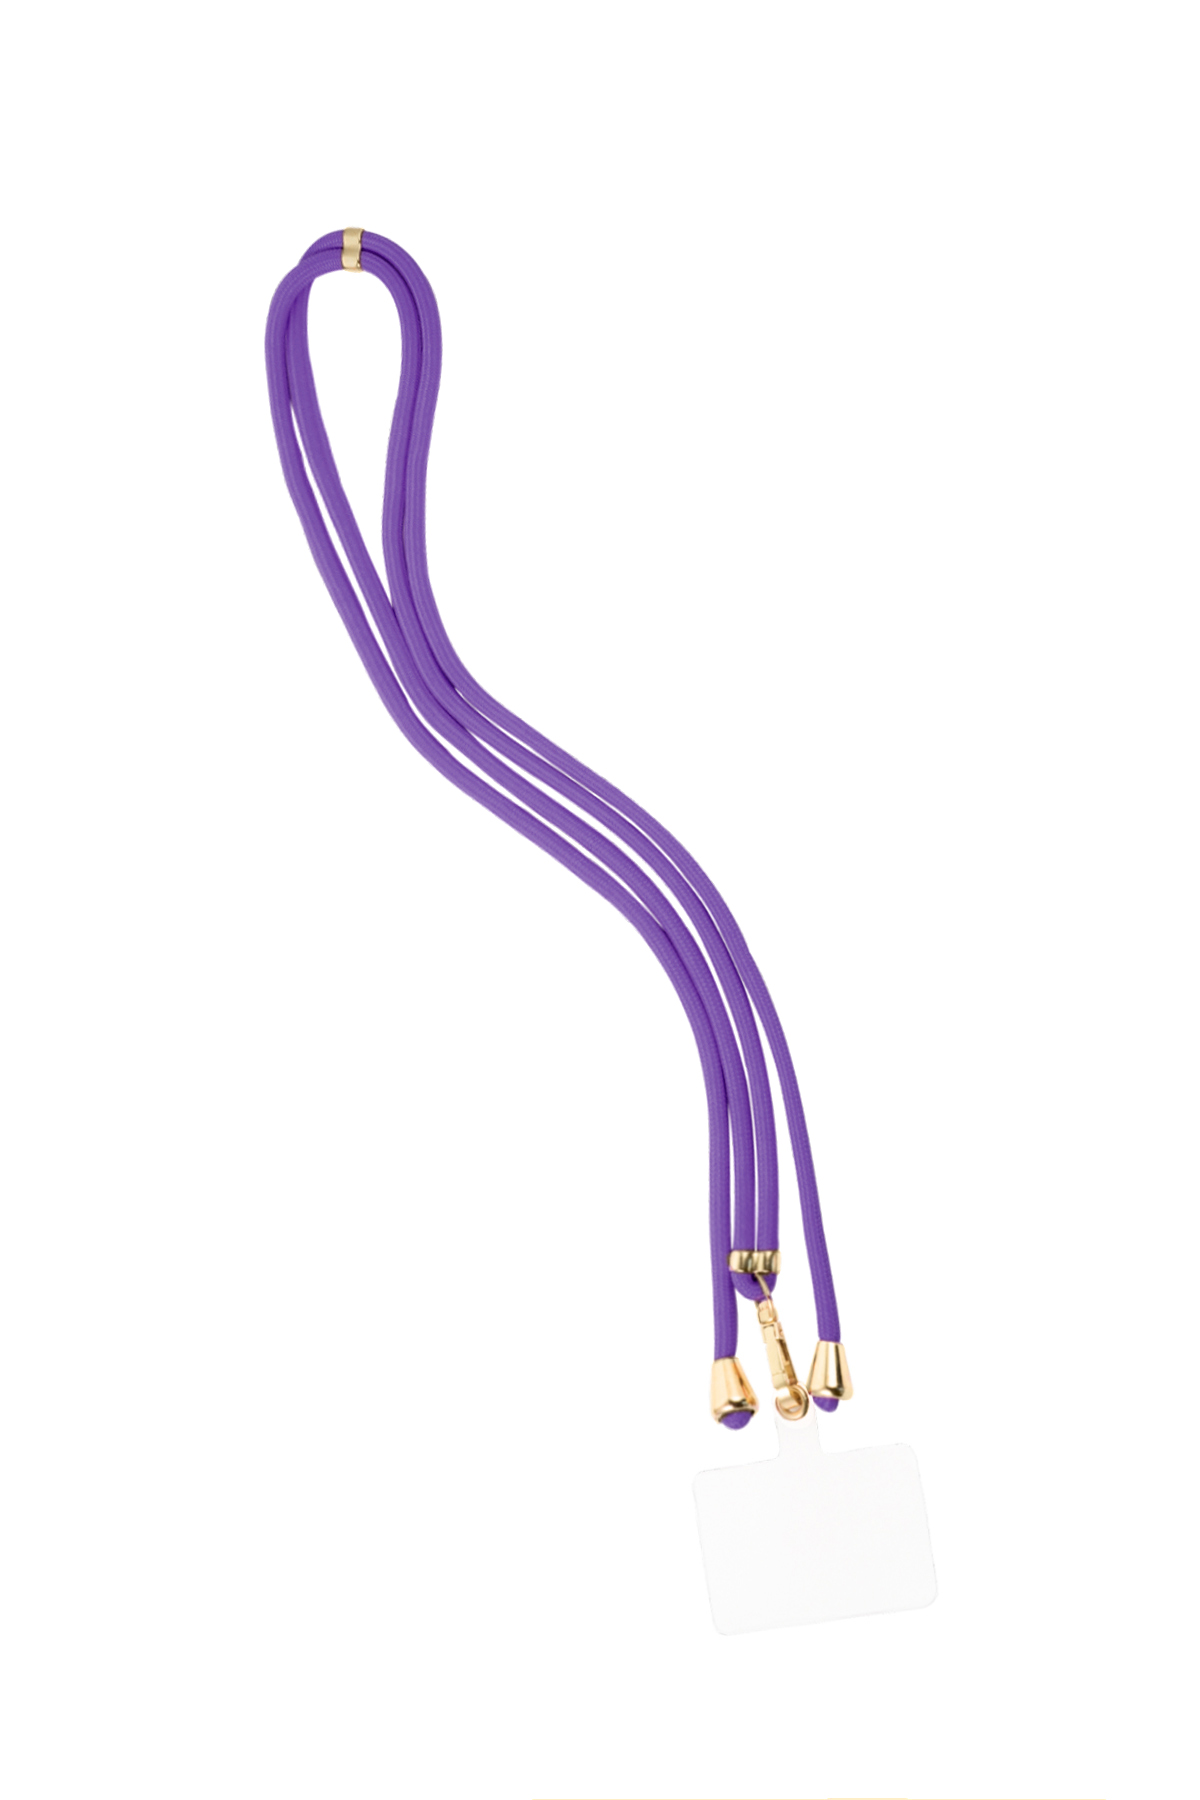 Cable telefónico con estampado sutil - violeta